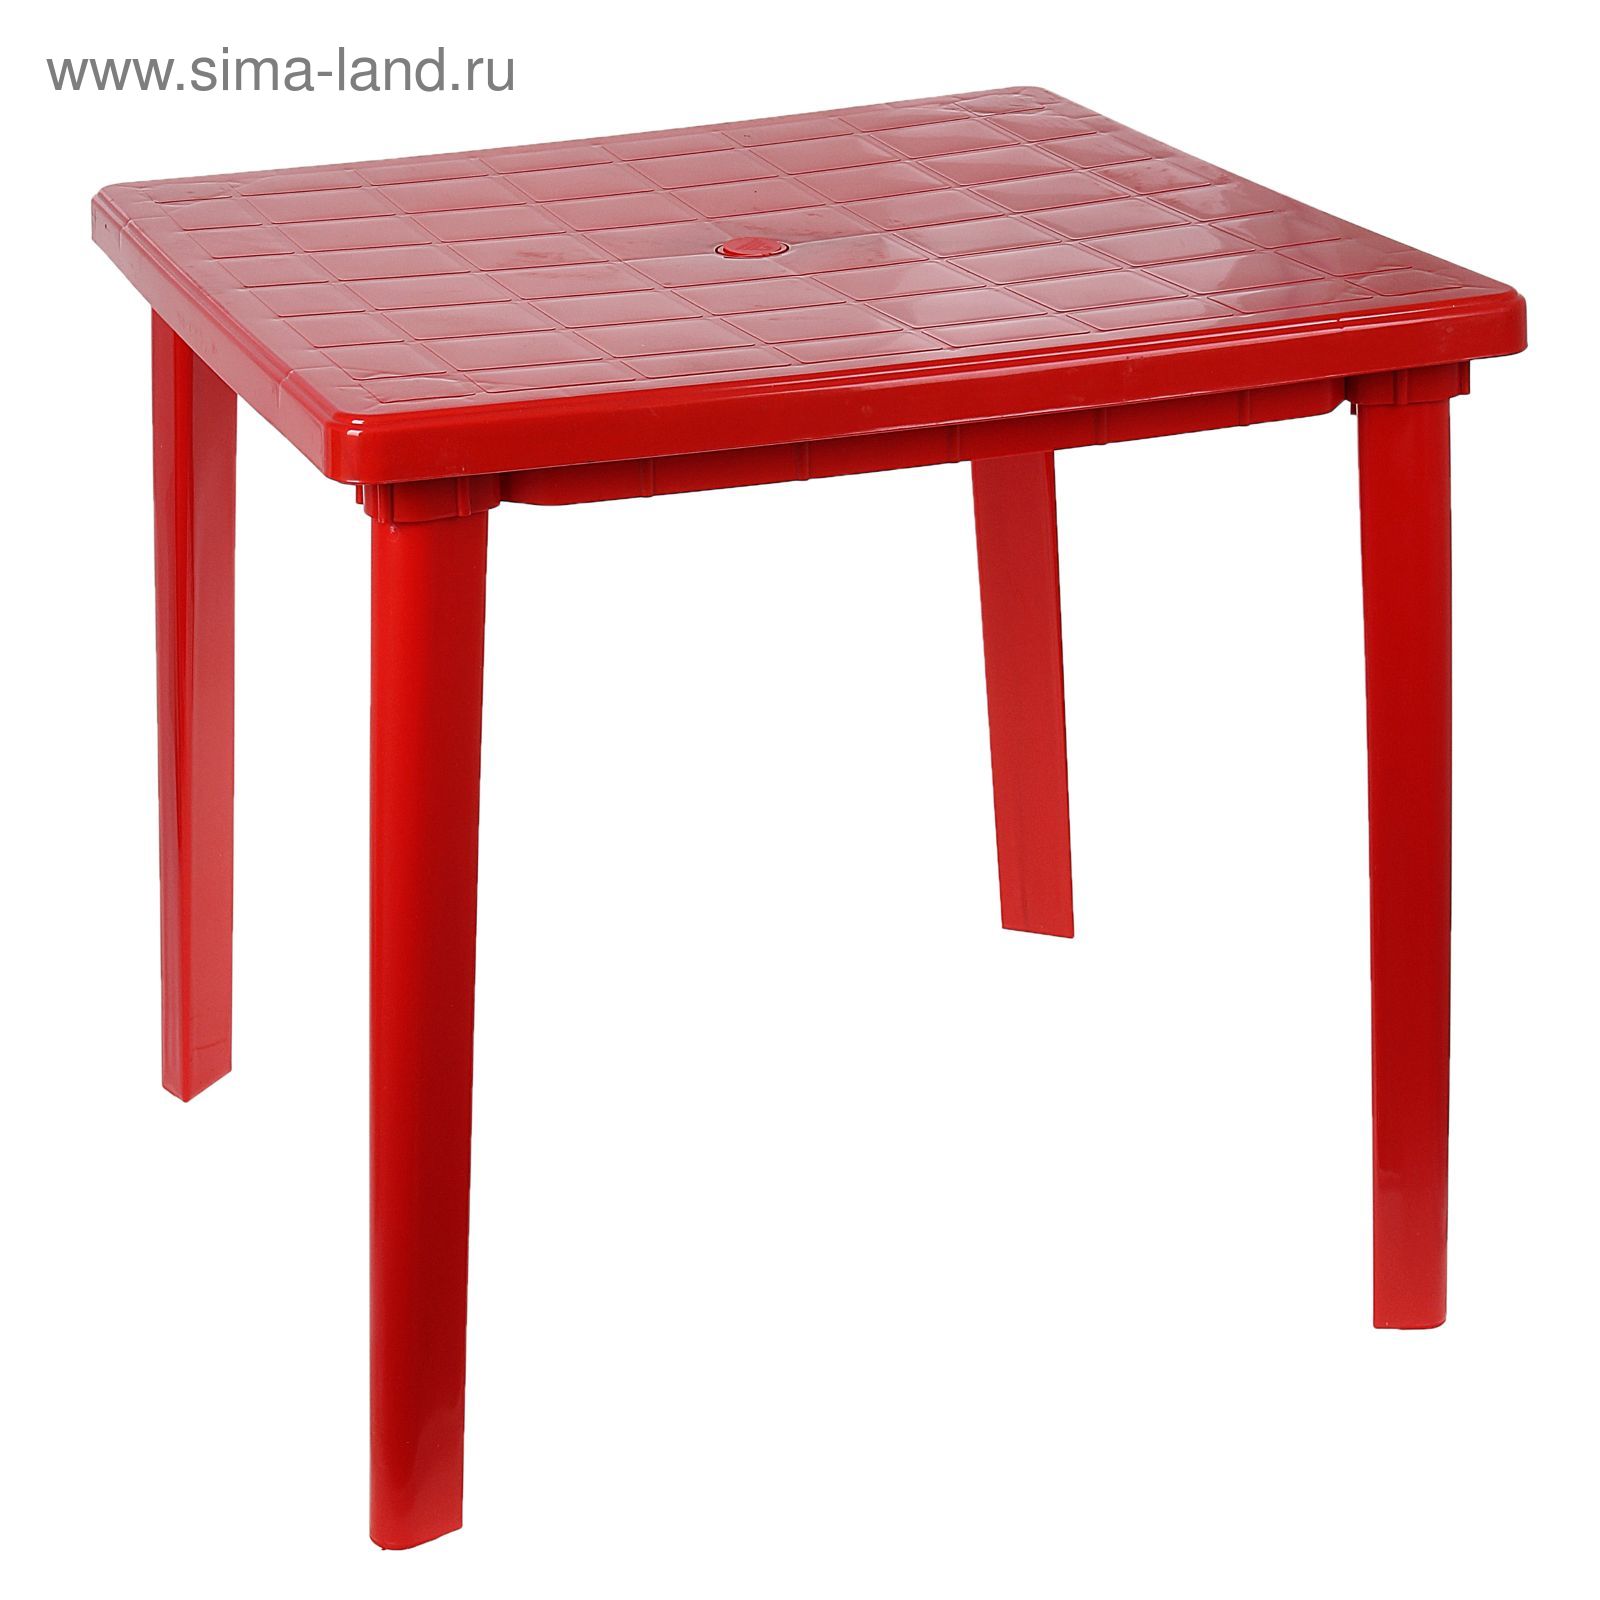 Стол квадратный, размер 80 х 80 х 74 см, цвет красный